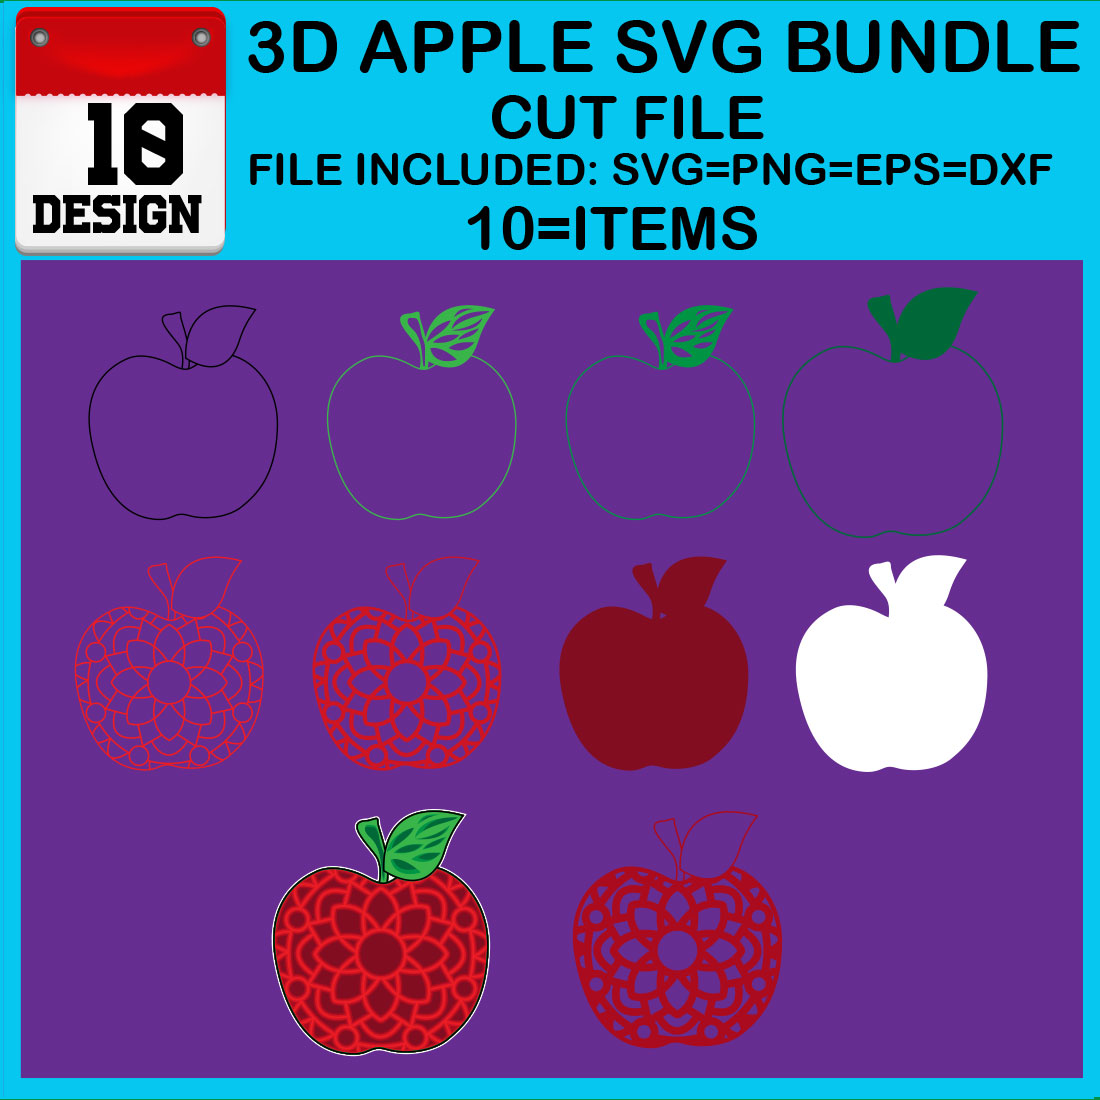 3D Apple SVG Bundle Cut File cover image.